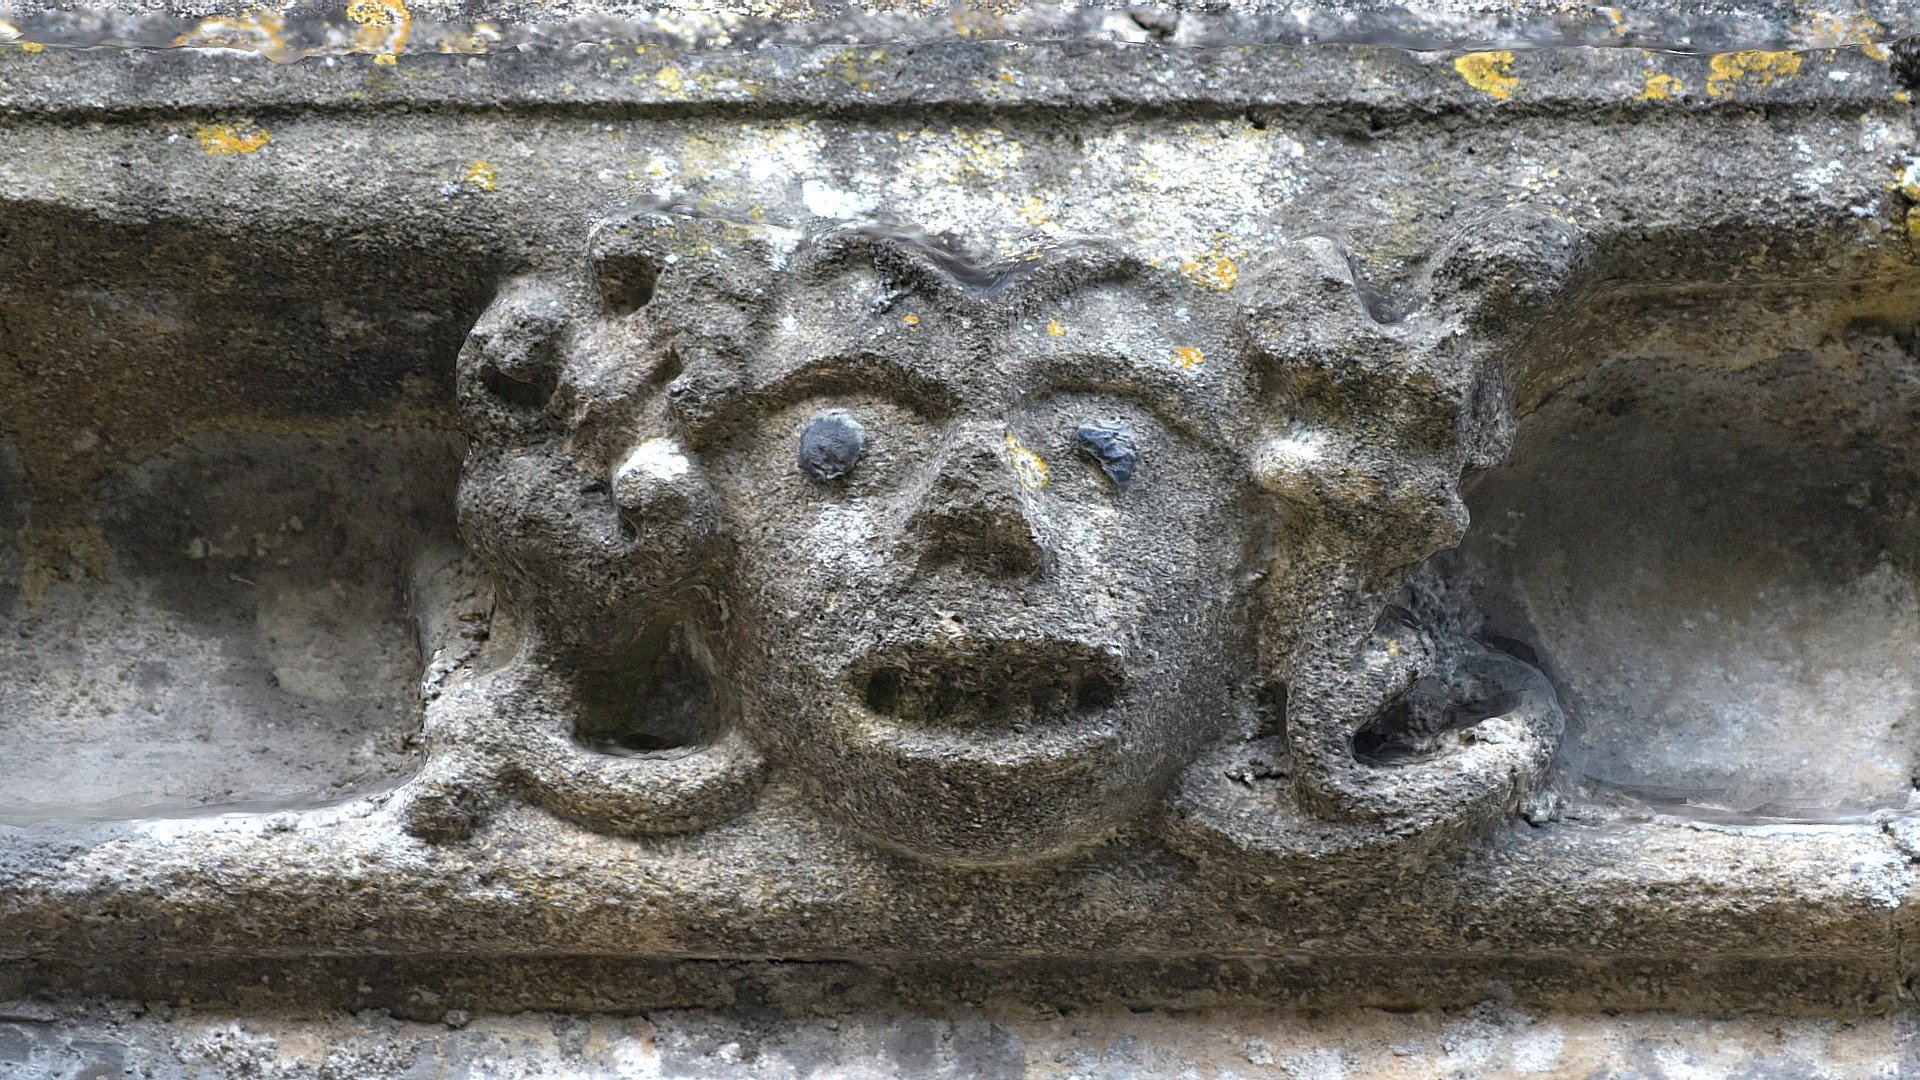 Grotesque head, Ryhall, Rutland